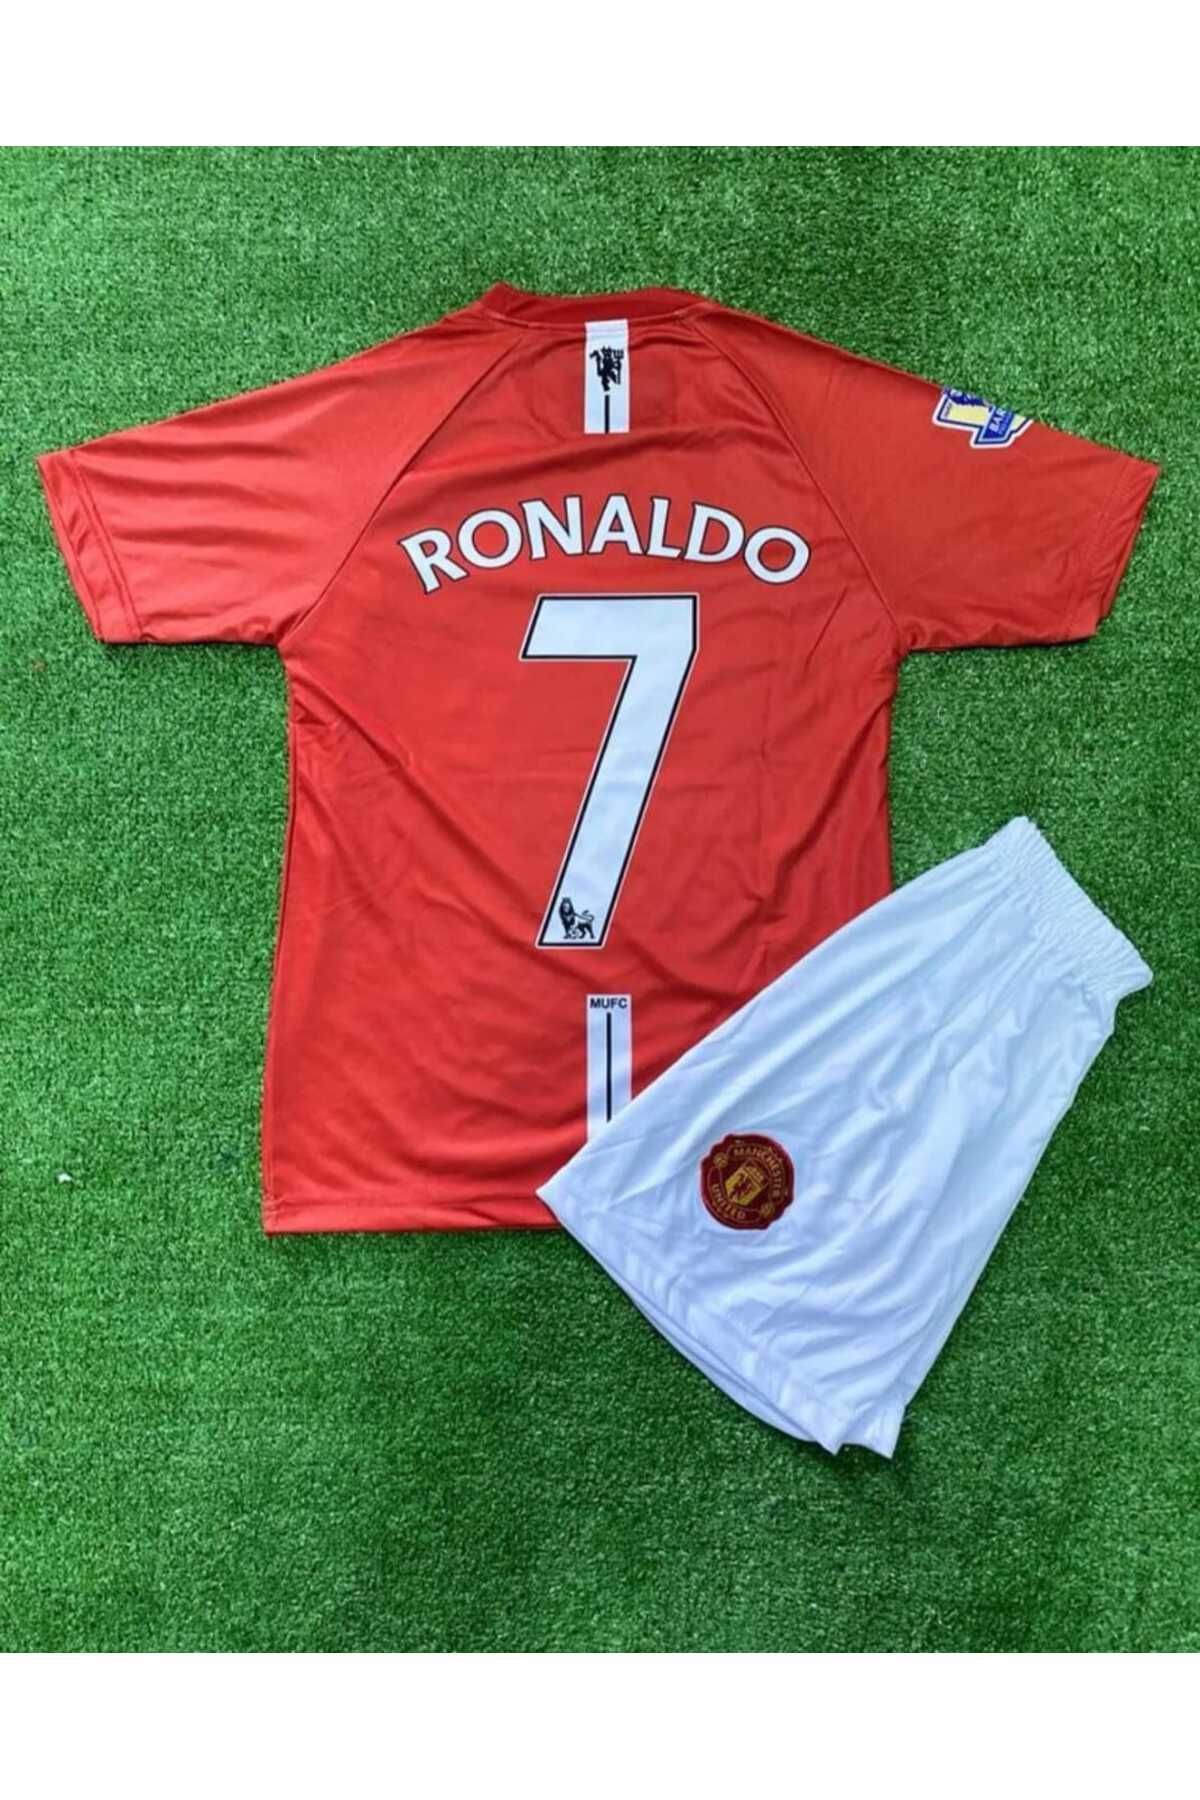 fireball Ronaldo Çorap Ve Bileklik Hediyeli Manchester United 2007-2008 Kırmızı Kısa Kollu Nostalji Forması